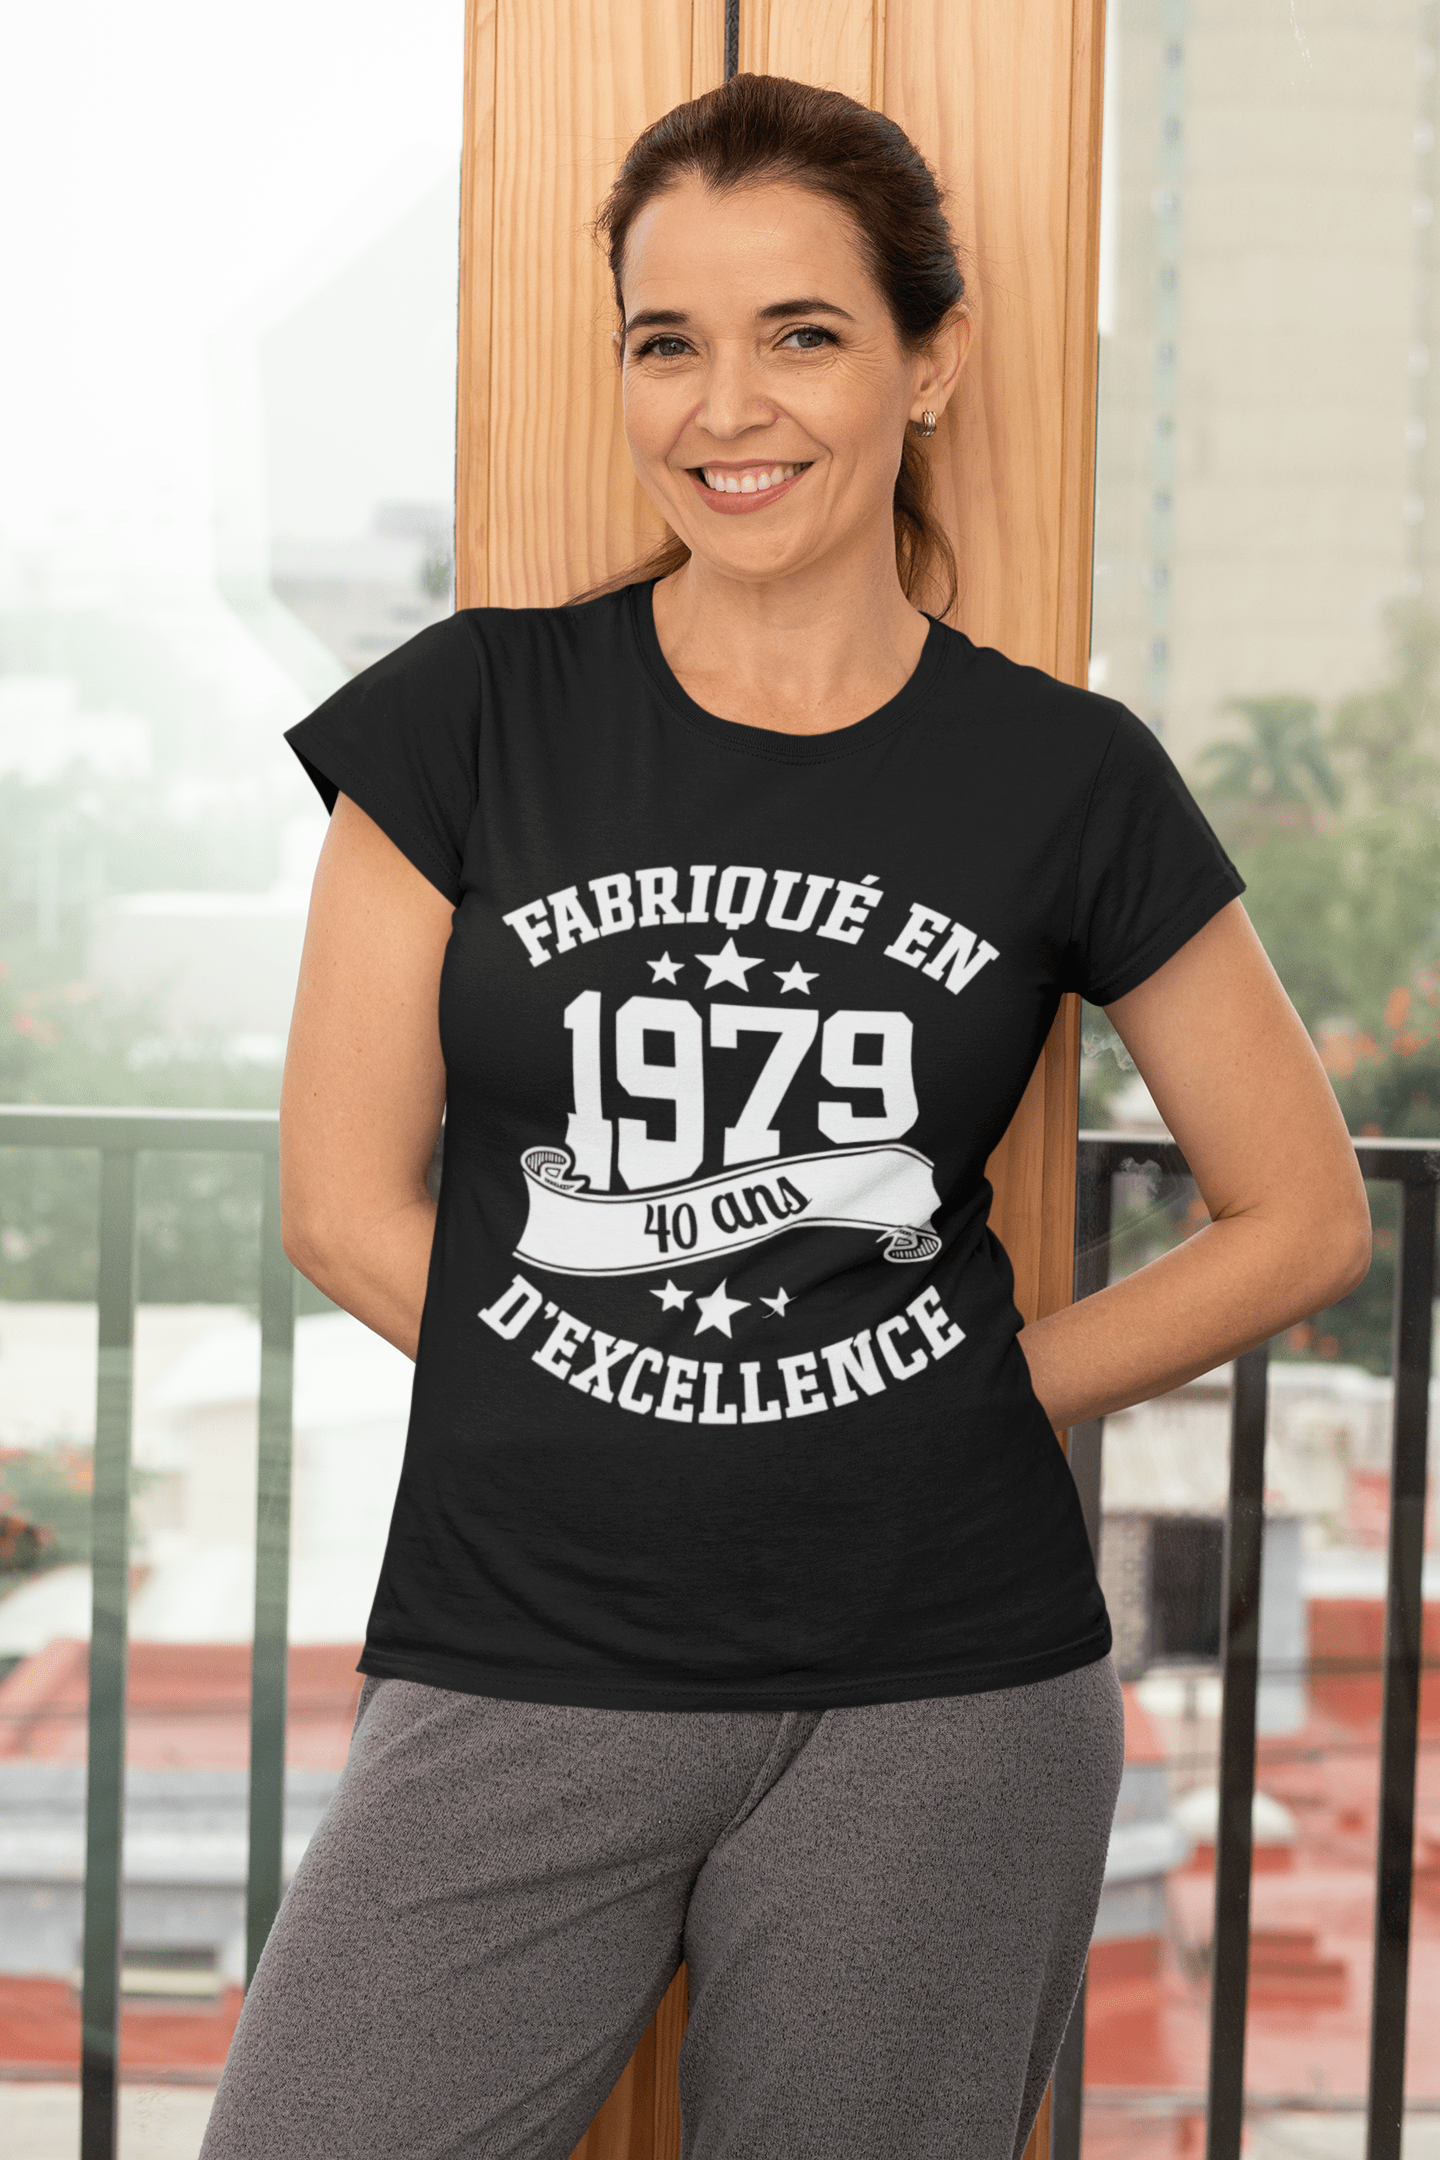 Ultrabasic - Tee-Shirt Femme col Rond Décolleté Fabriqué en 1979, 40 Ans d'être Génial T-Shirt Noir Profond